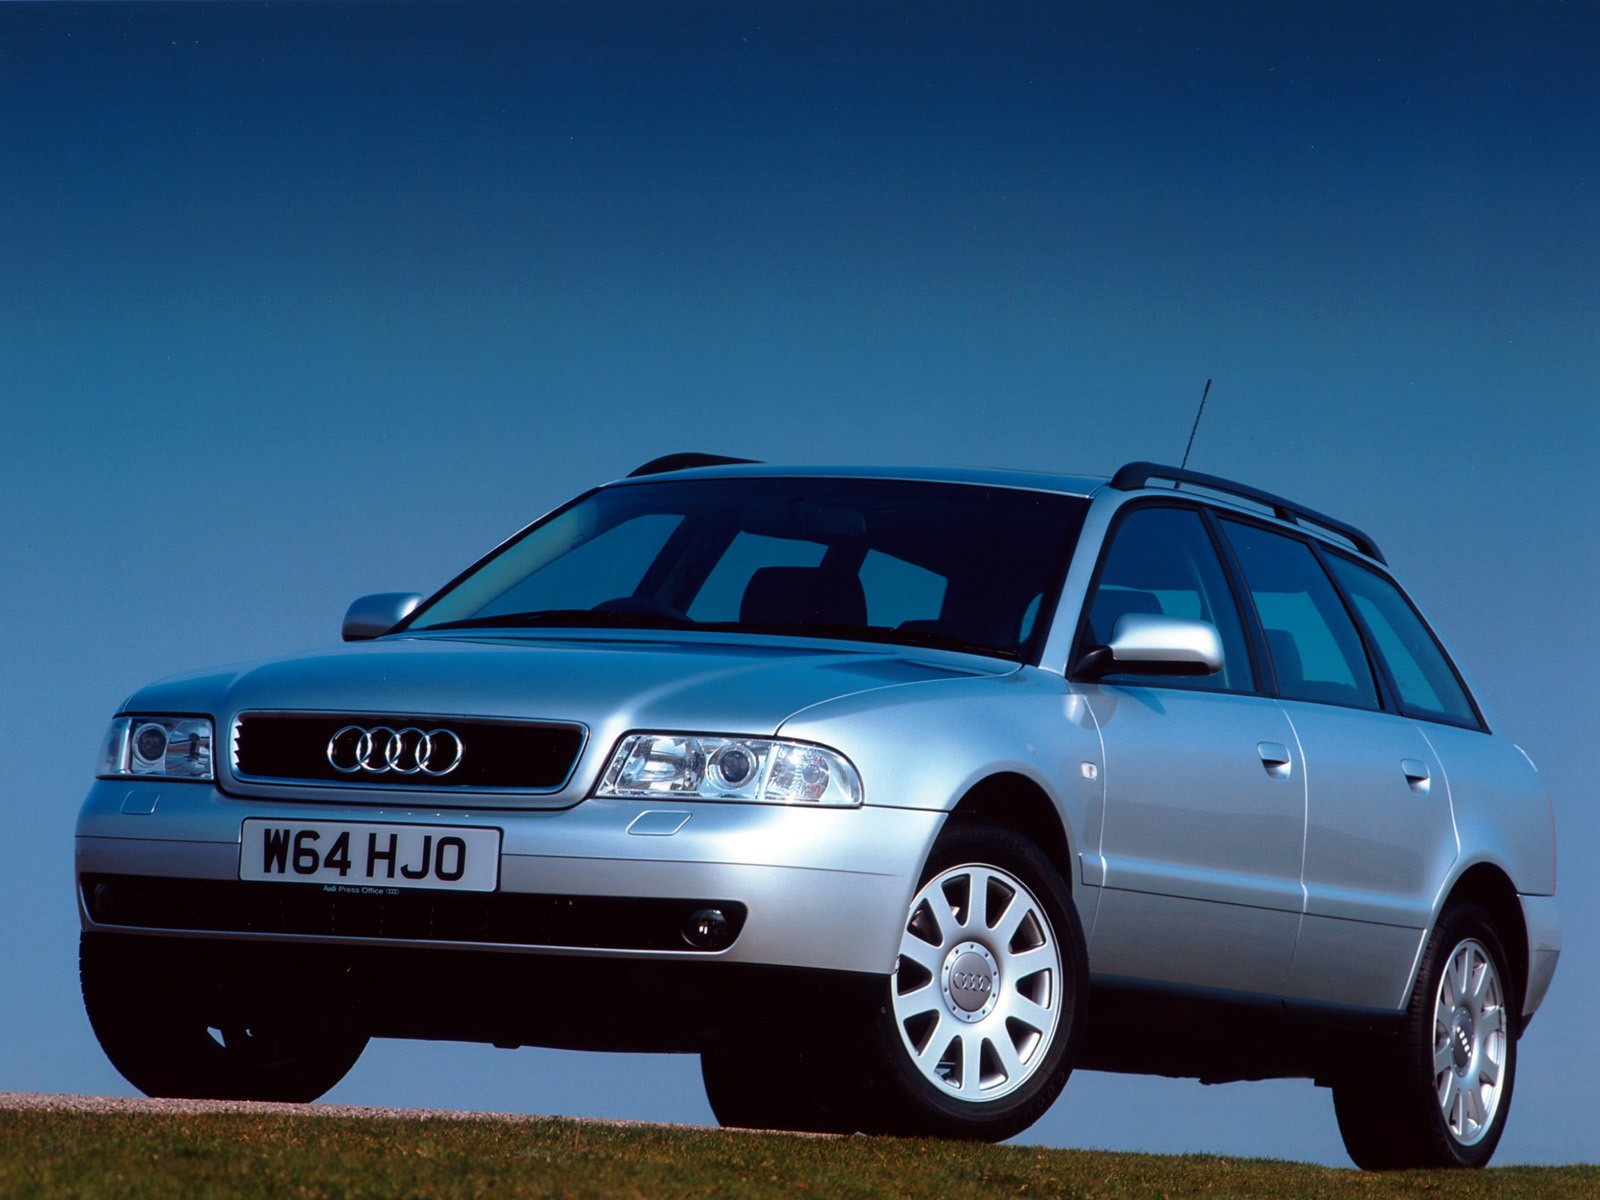 Ауди б5 универсал купить. Ауди а4 Авант 2000. Ауди а4 Авант 1997. Audi a4 b5 универсал. Ауди а4 Авант 2001.